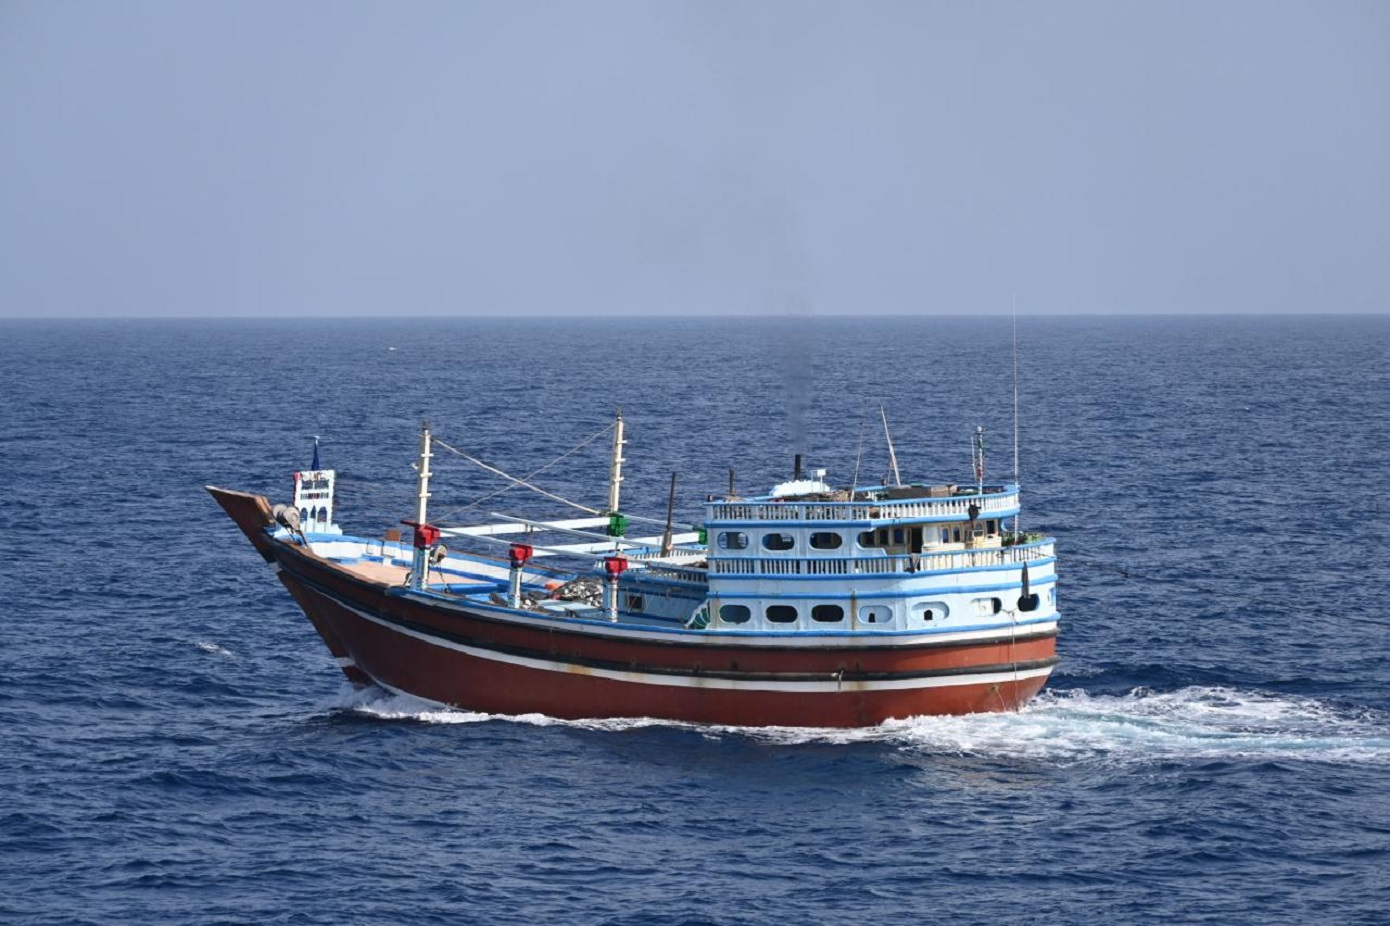 Αναχαιτίστηκε από το Πολεμικό Ναυτικό της Ινδίας αλιευτικό υπό σημαία Ιράν που υπέστη πειρατεία κοντά στη Σομαλία